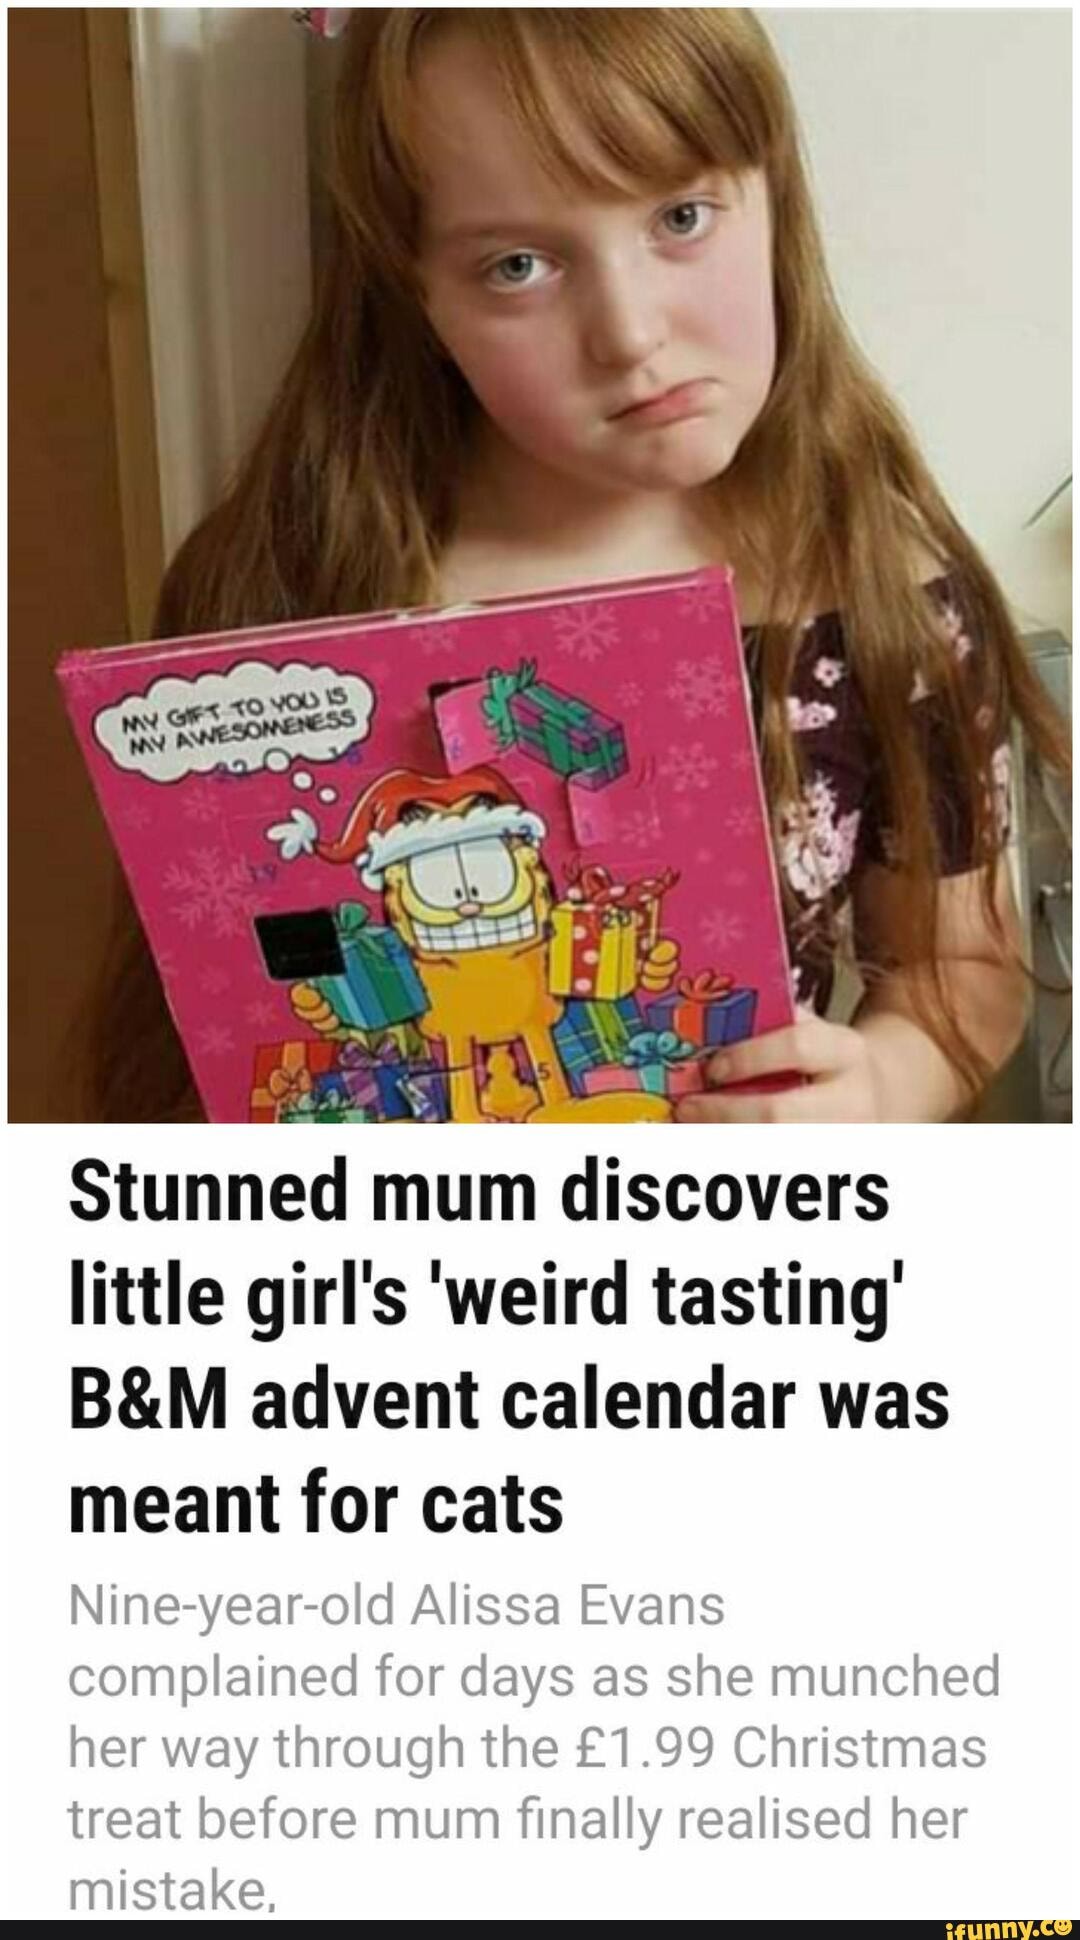 Stunned mum discovers little girl #39 s #39 weird tasting #39 advent calendar was